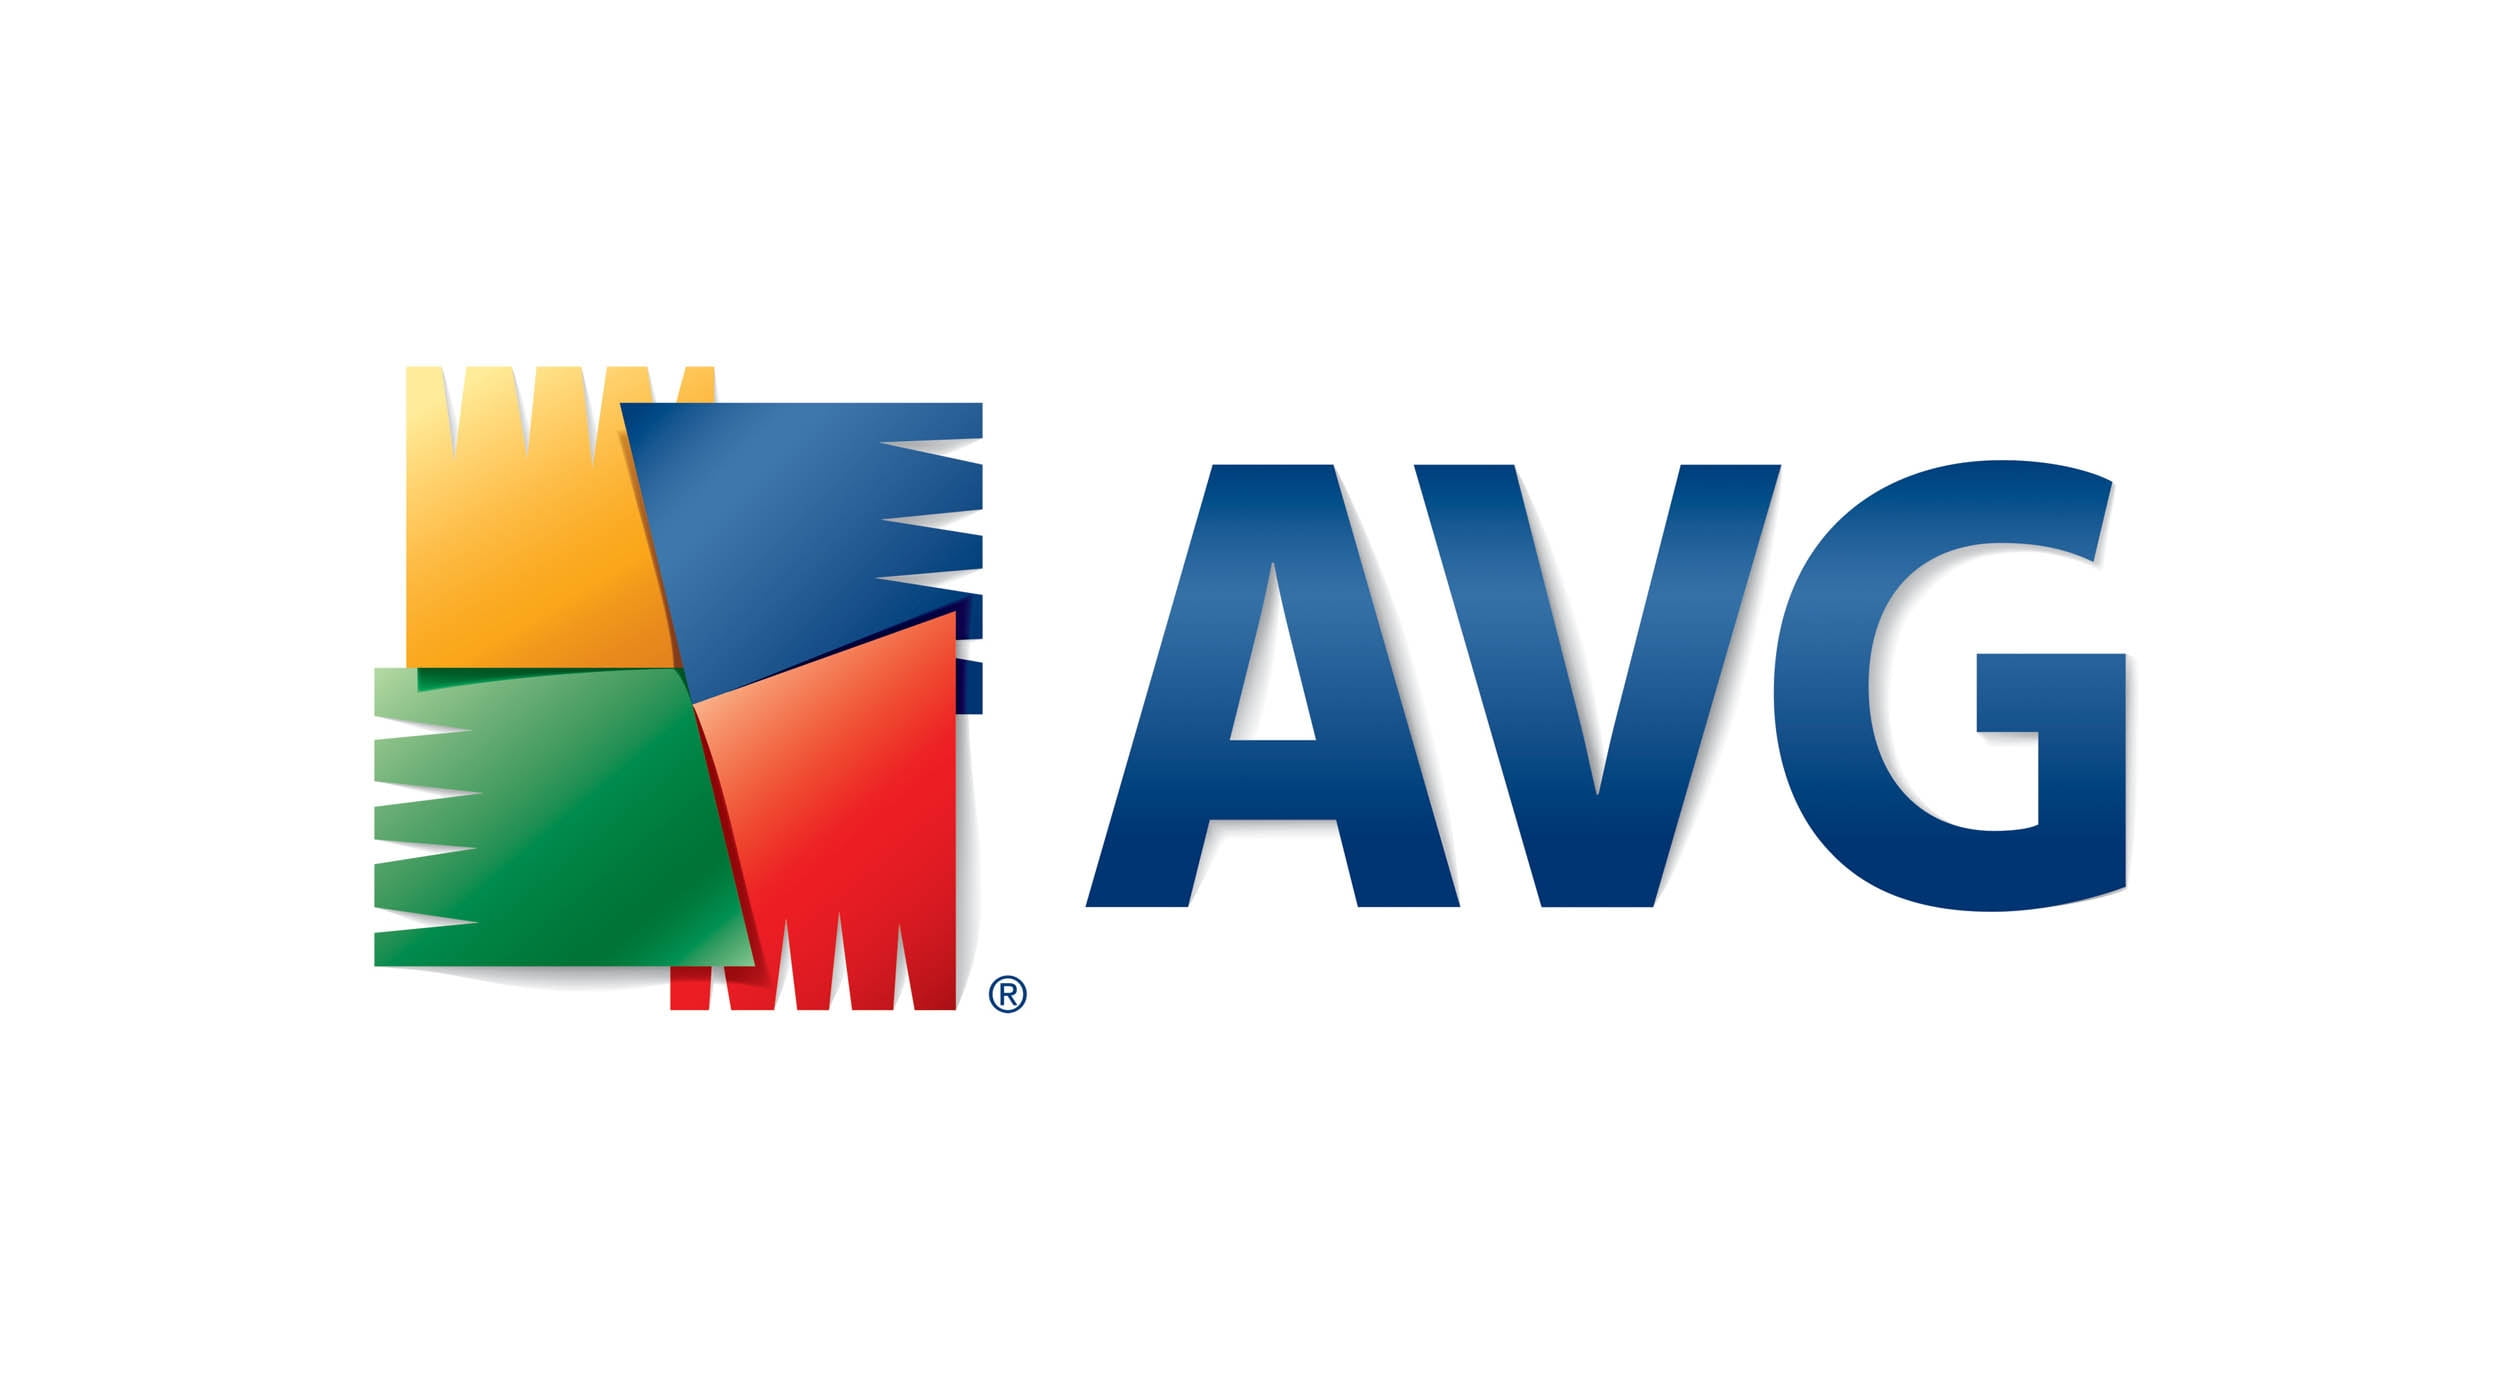 AVG antivirus logo, brand, flag, symbol, illustration, vector